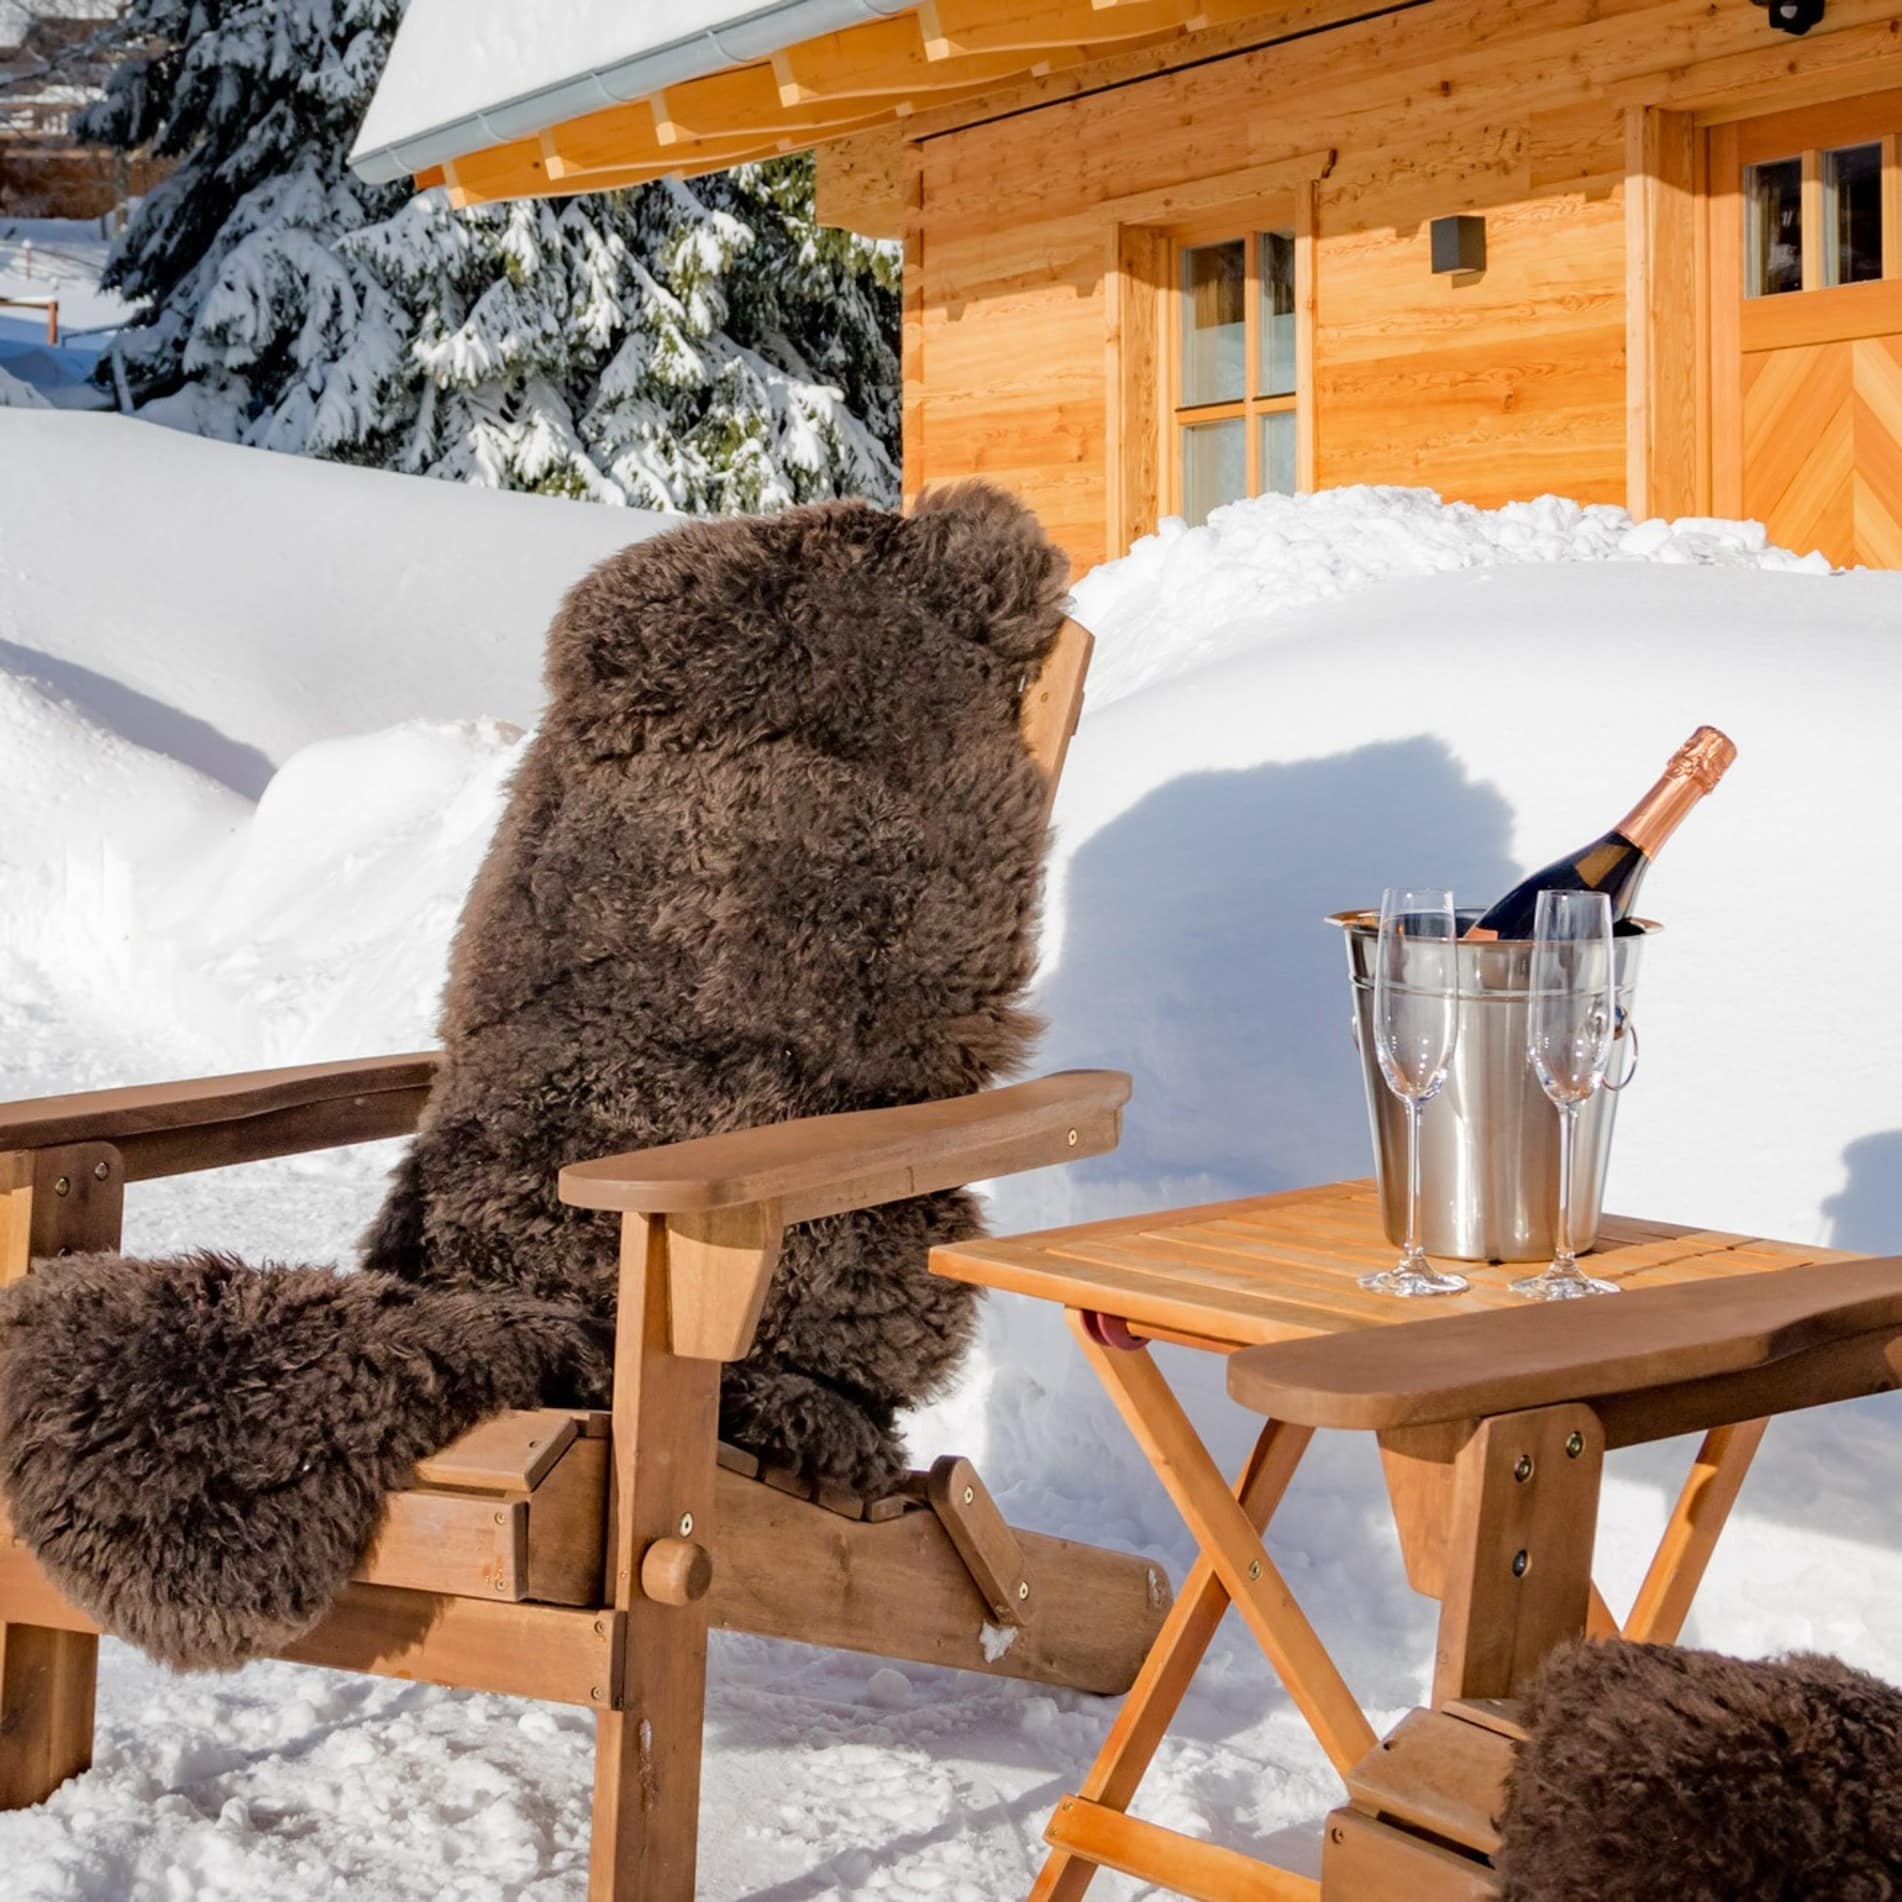 Champagner für zwei vor einem schneebeckten Luxus-Chalet im Bayerischen Wald